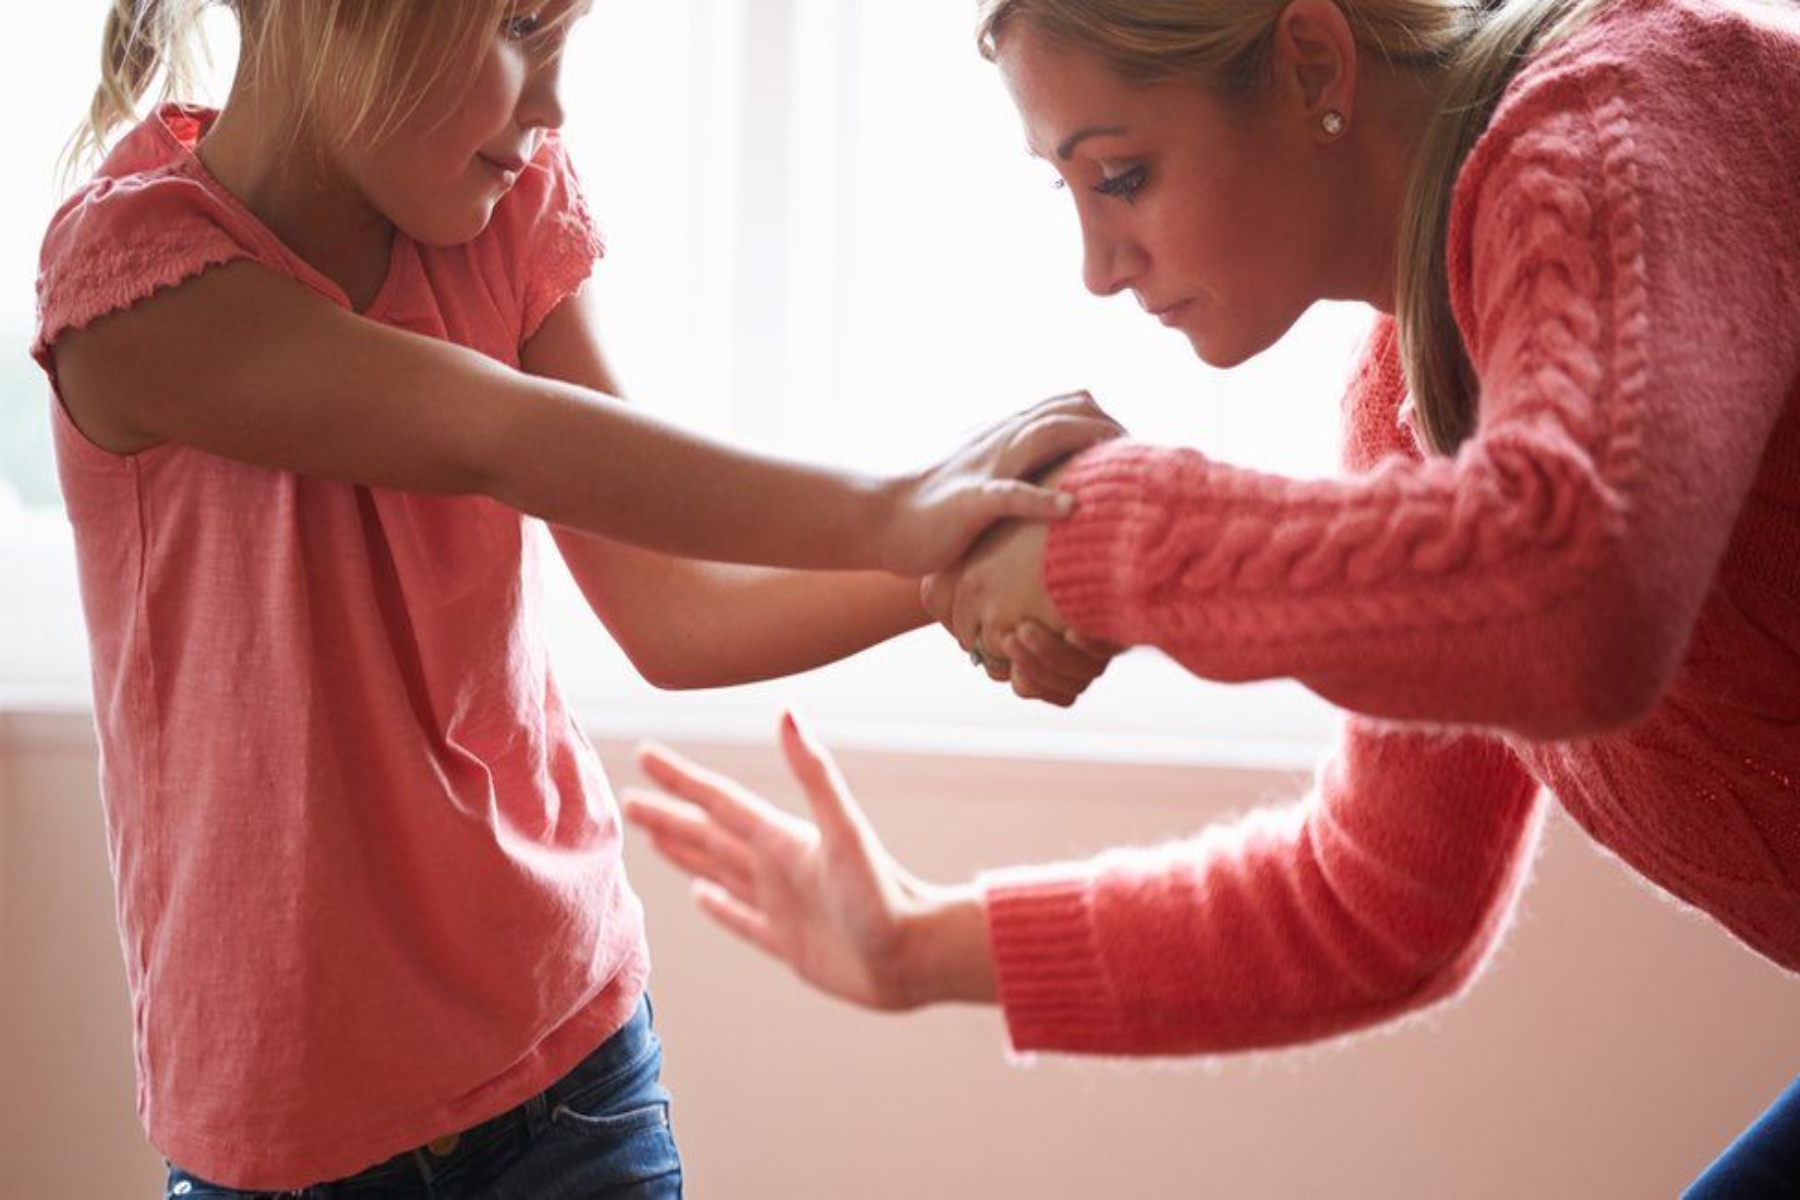 Ανατροφή παιδιών: 1 στους 4 ενήλικες θεωρεί ότι το χαστούκι είναι απαραίτητο